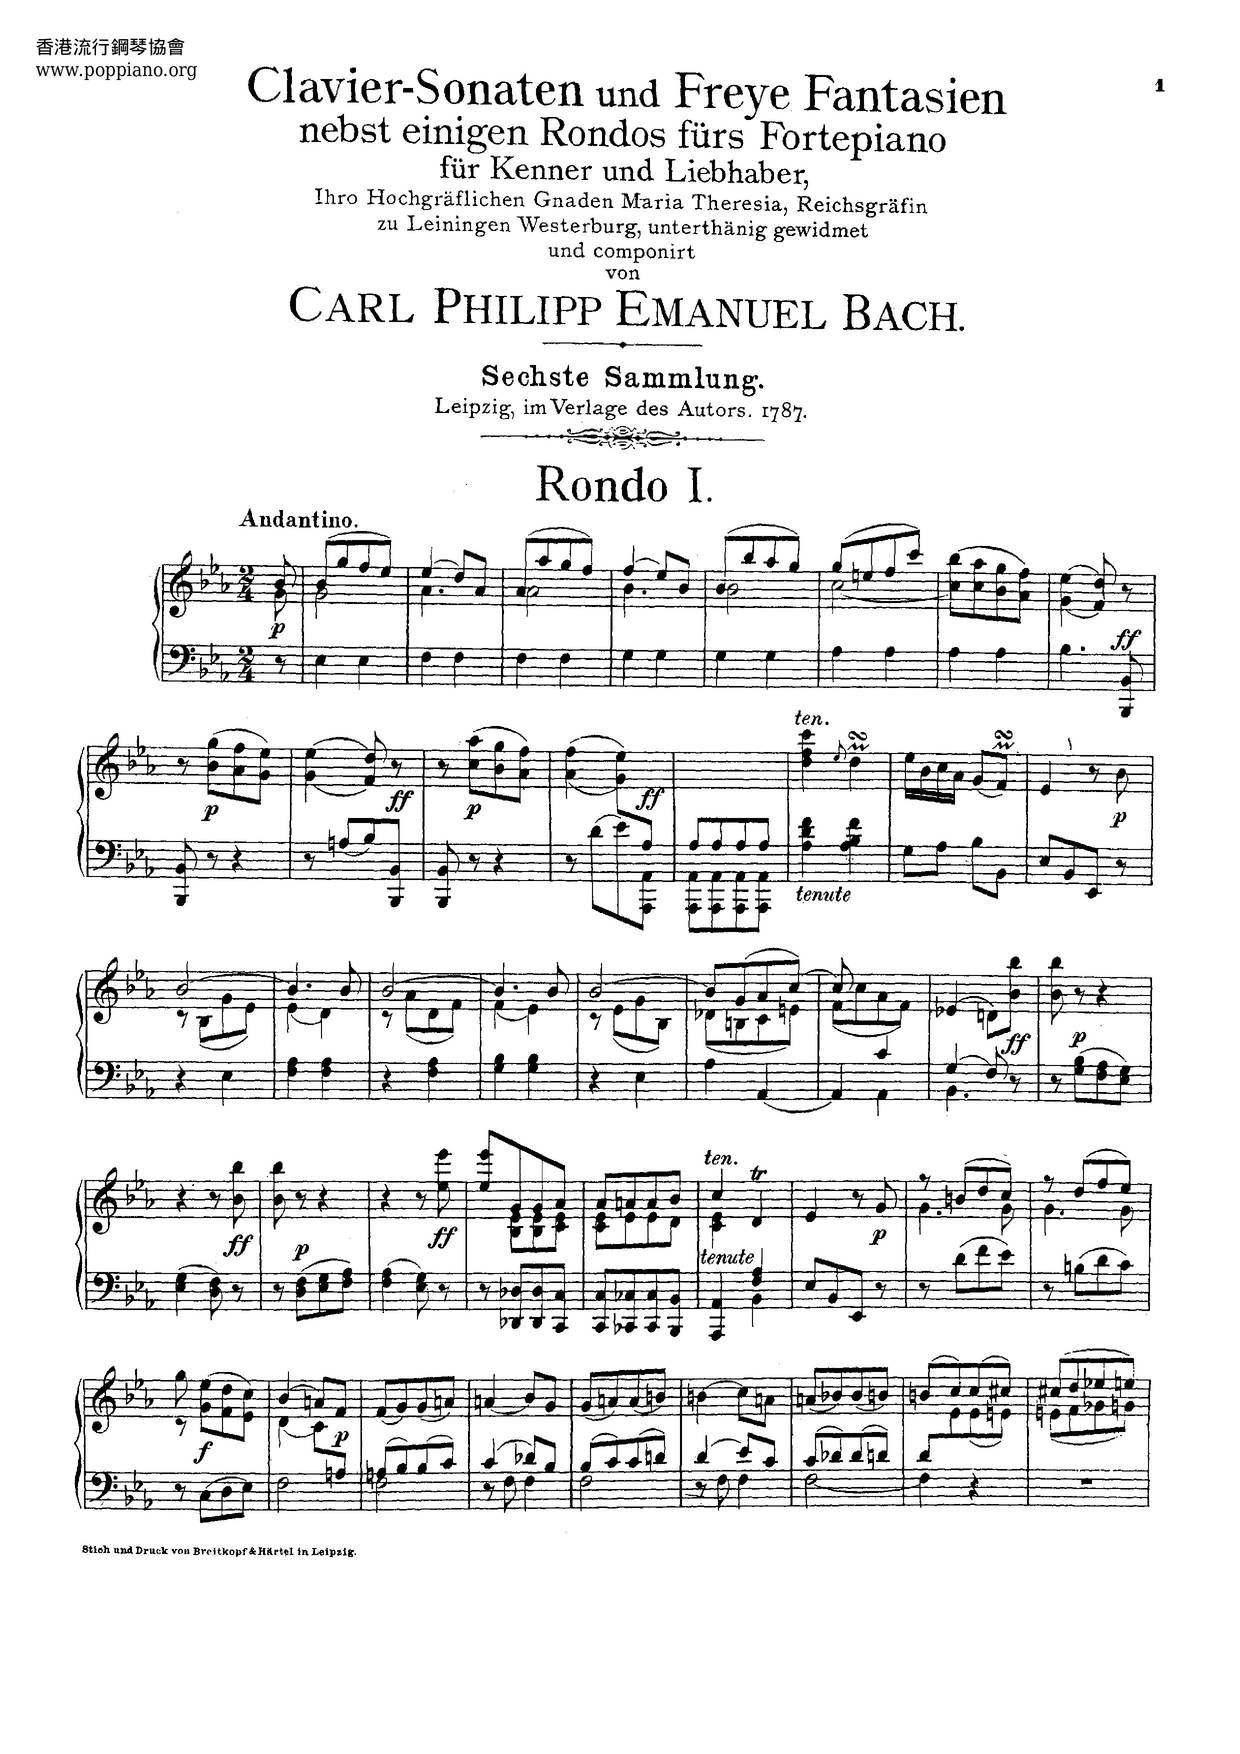 Clavier-Sonaten Für Kenner Und Liebhaber, Wq.55-59, 61ピアノ譜